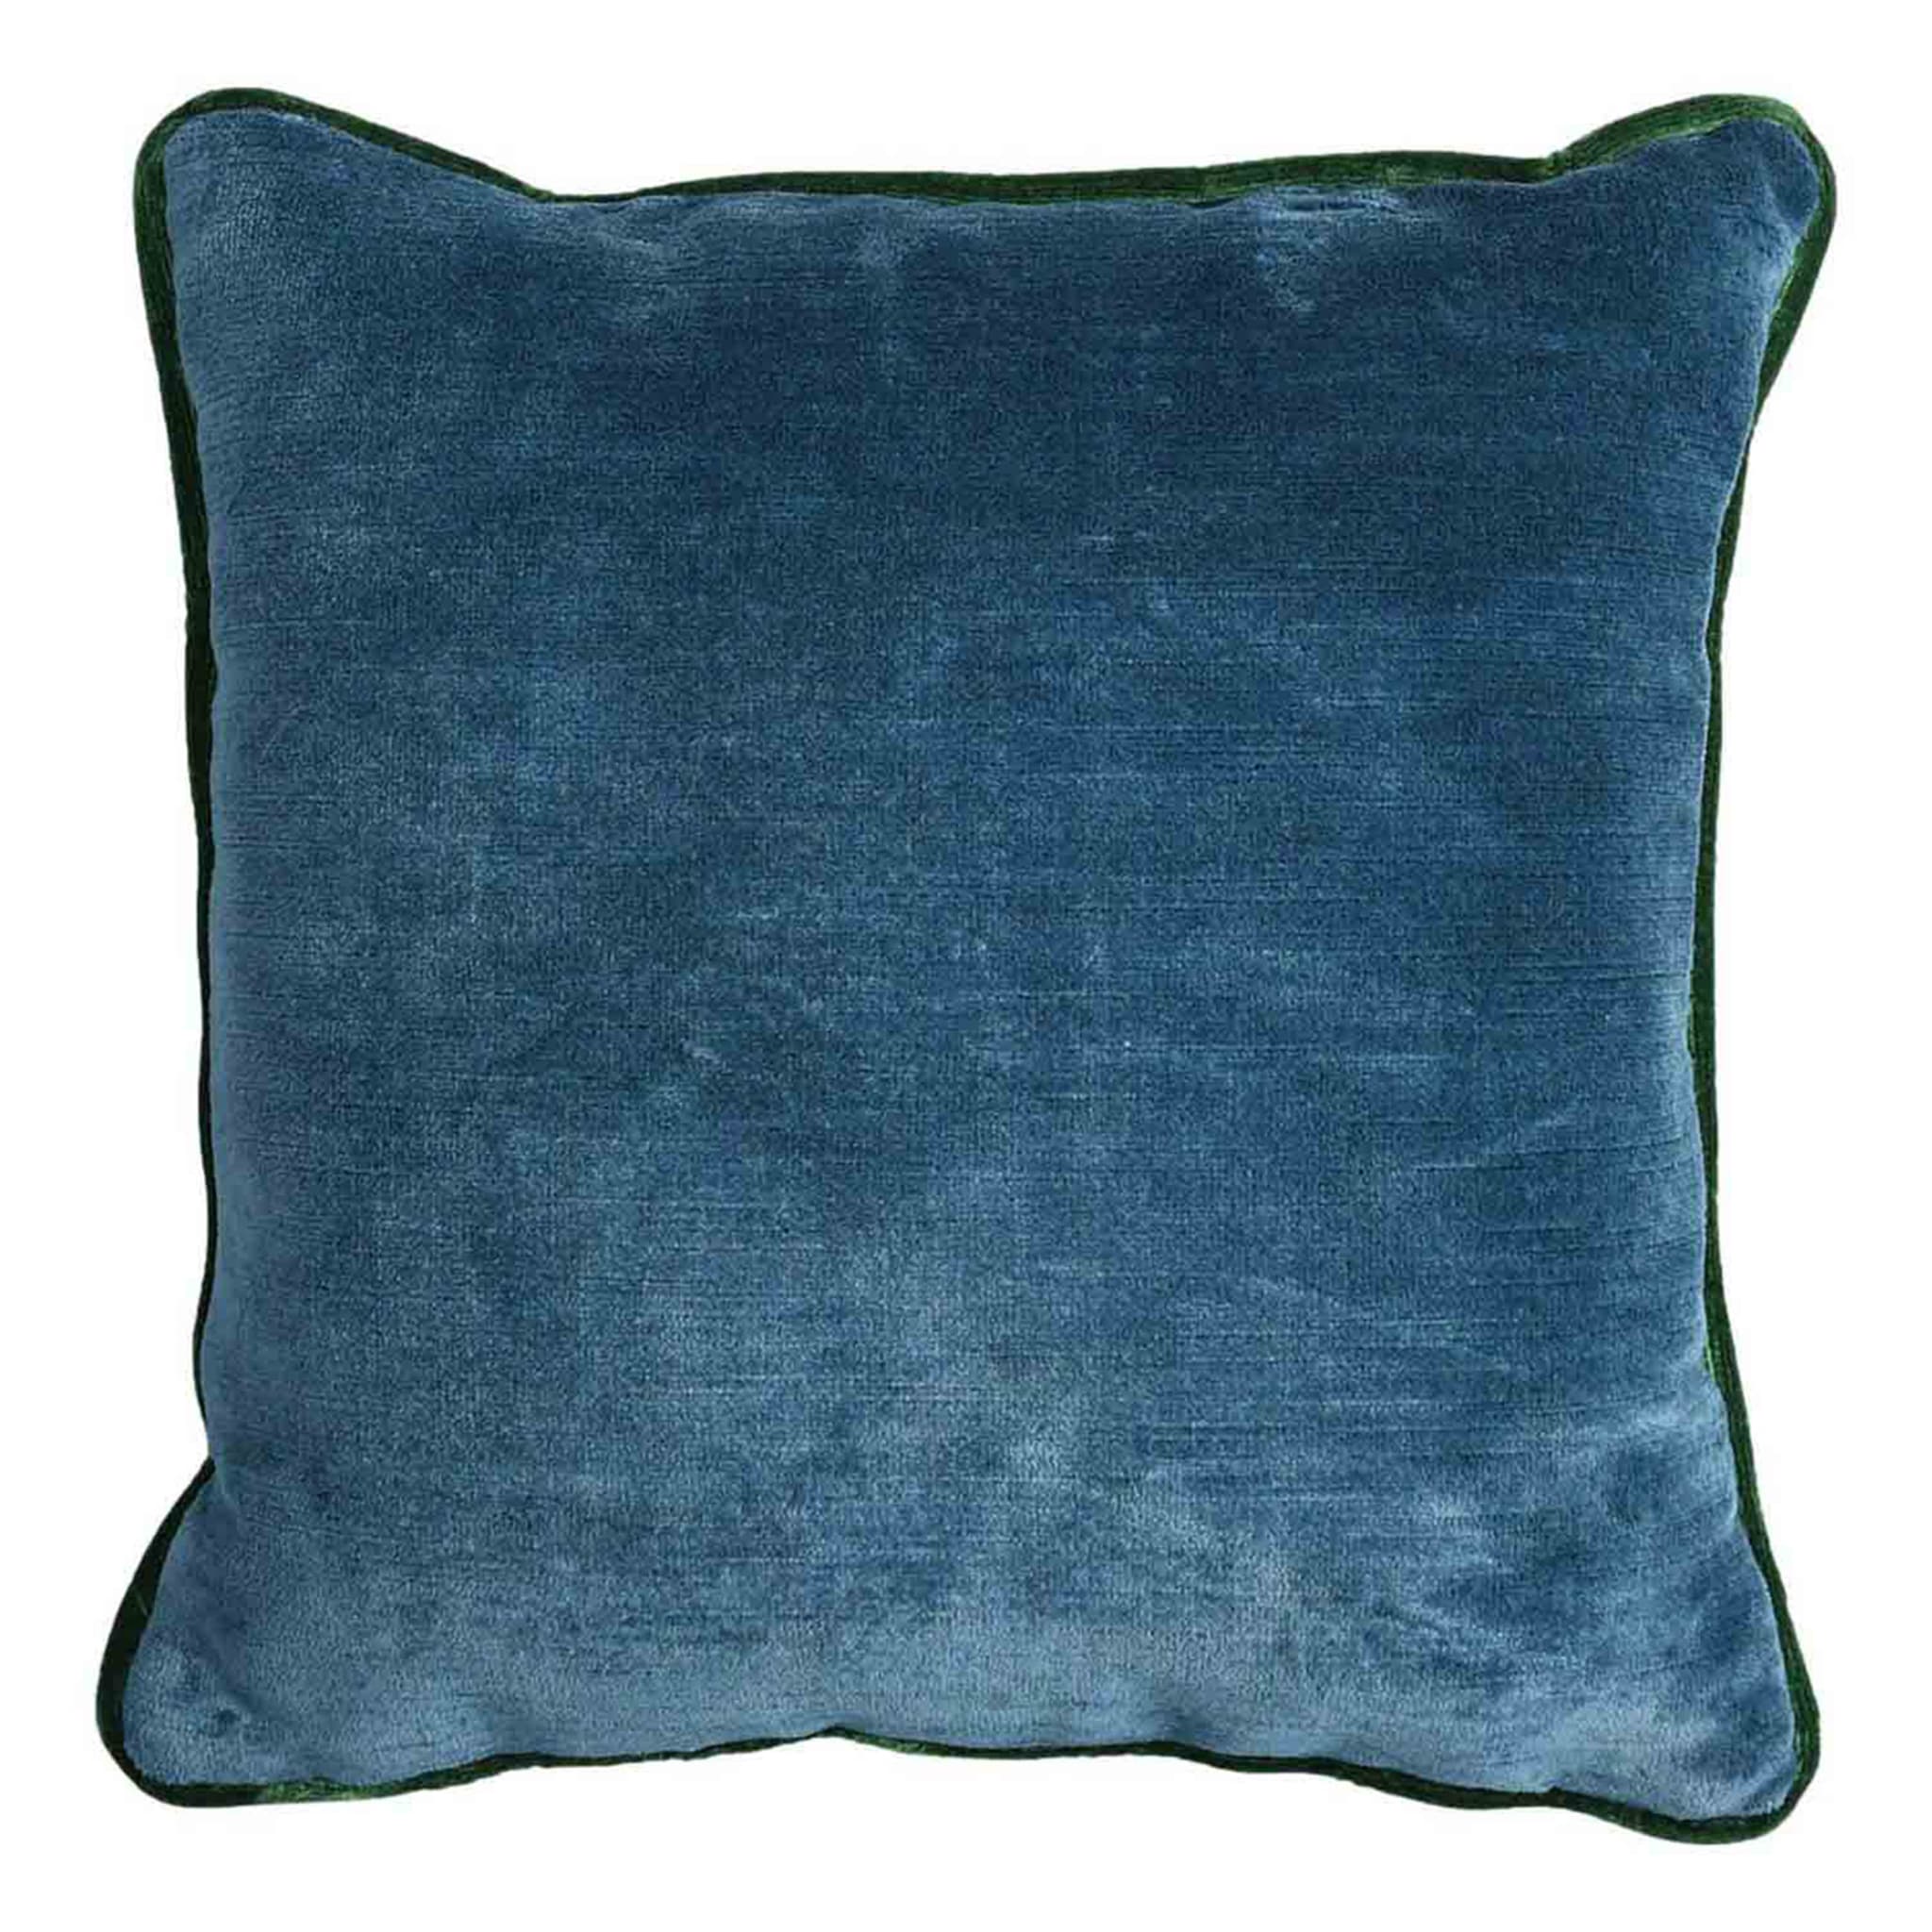 Green Carrè Cushion in striped jacquard fabric - Alternative view 1